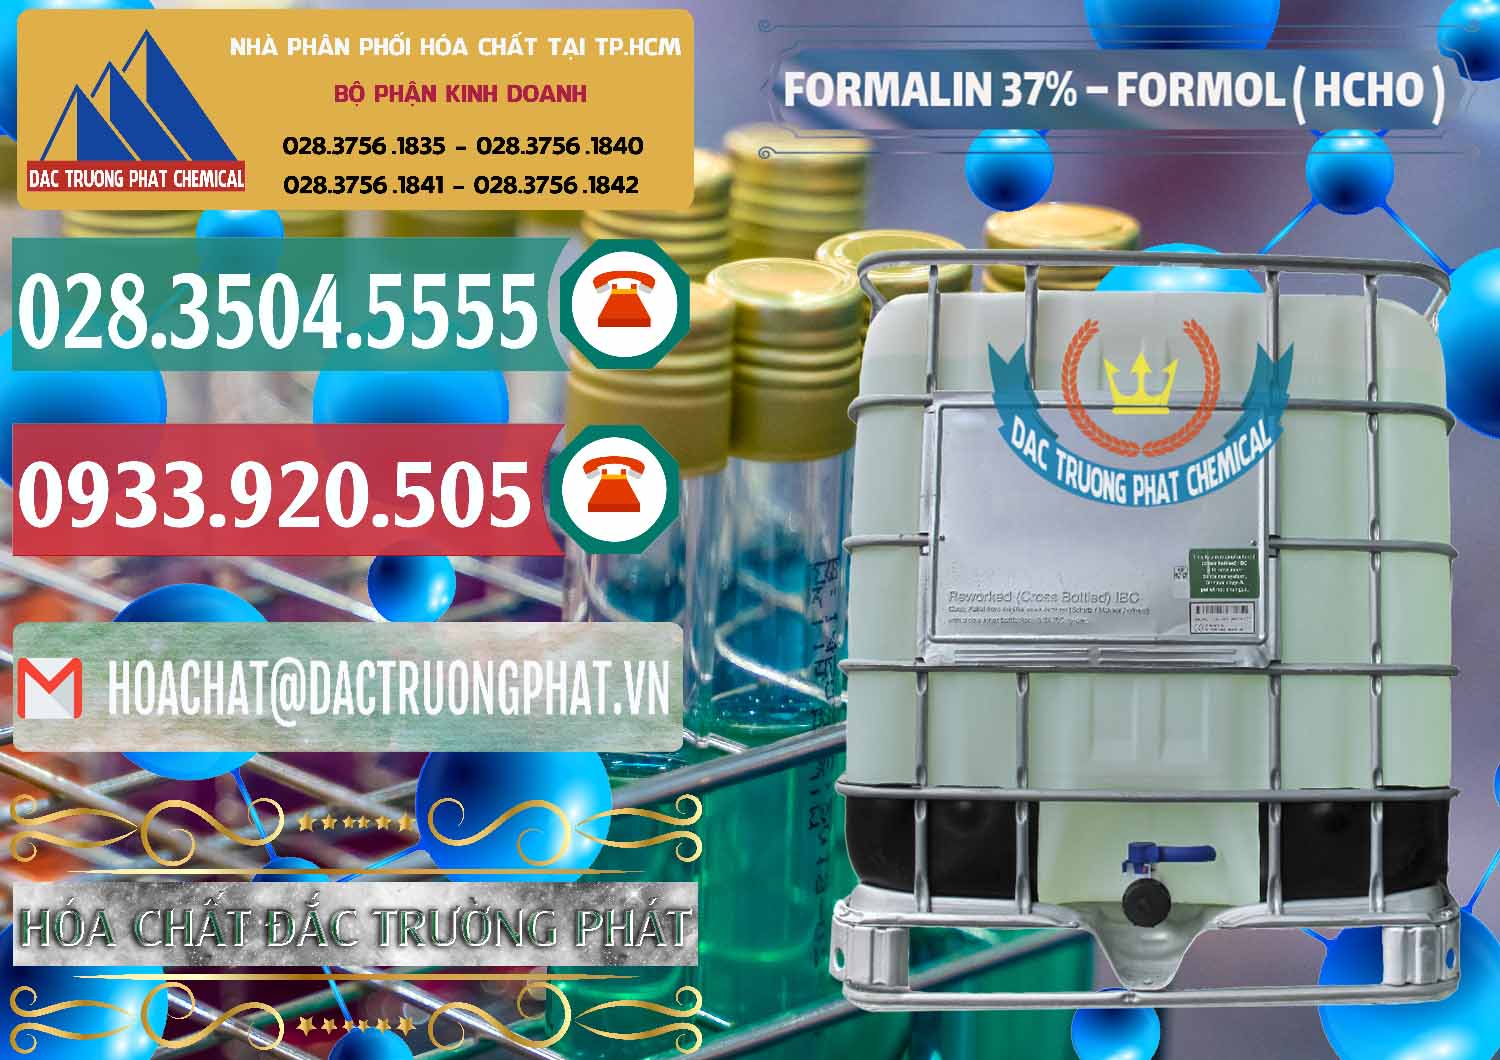 Nơi cung ứng và bán Formalin - Formol ( HCHO ) 37% Việt Nam - 0187 - Kinh doanh và phân phối hóa chất tại TP.HCM - muabanhoachat.vn